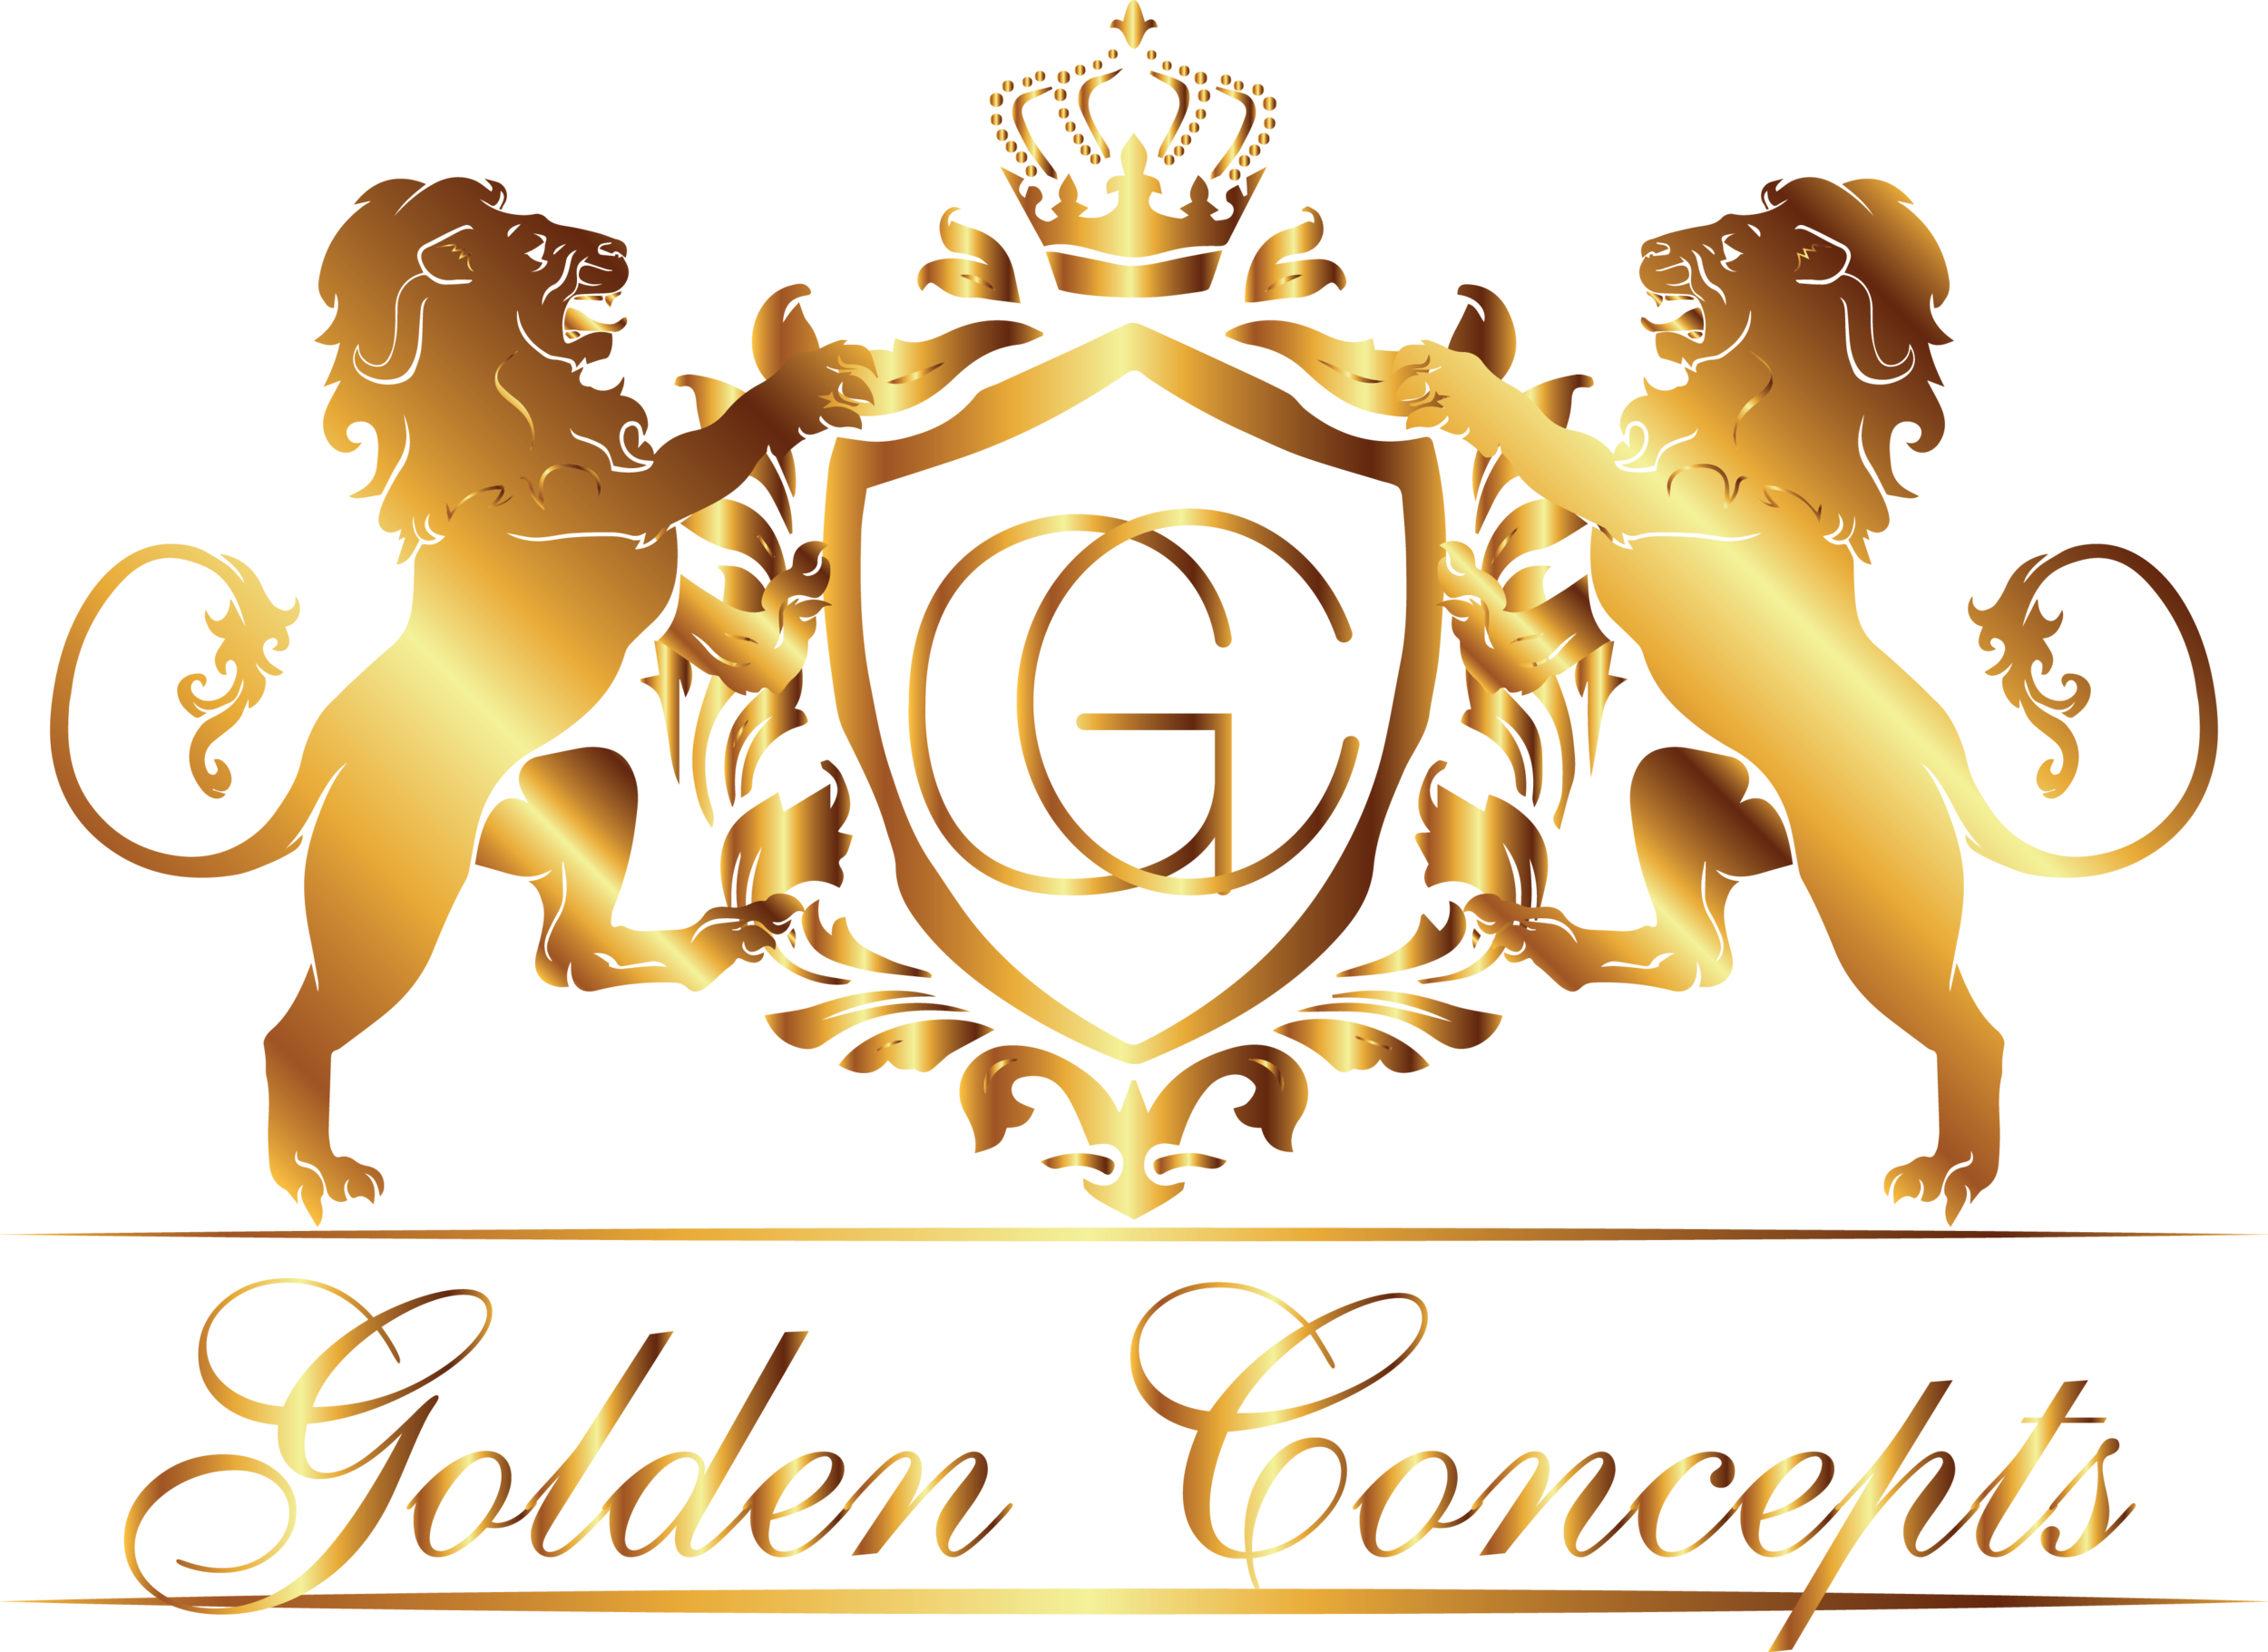 Golden Concepts